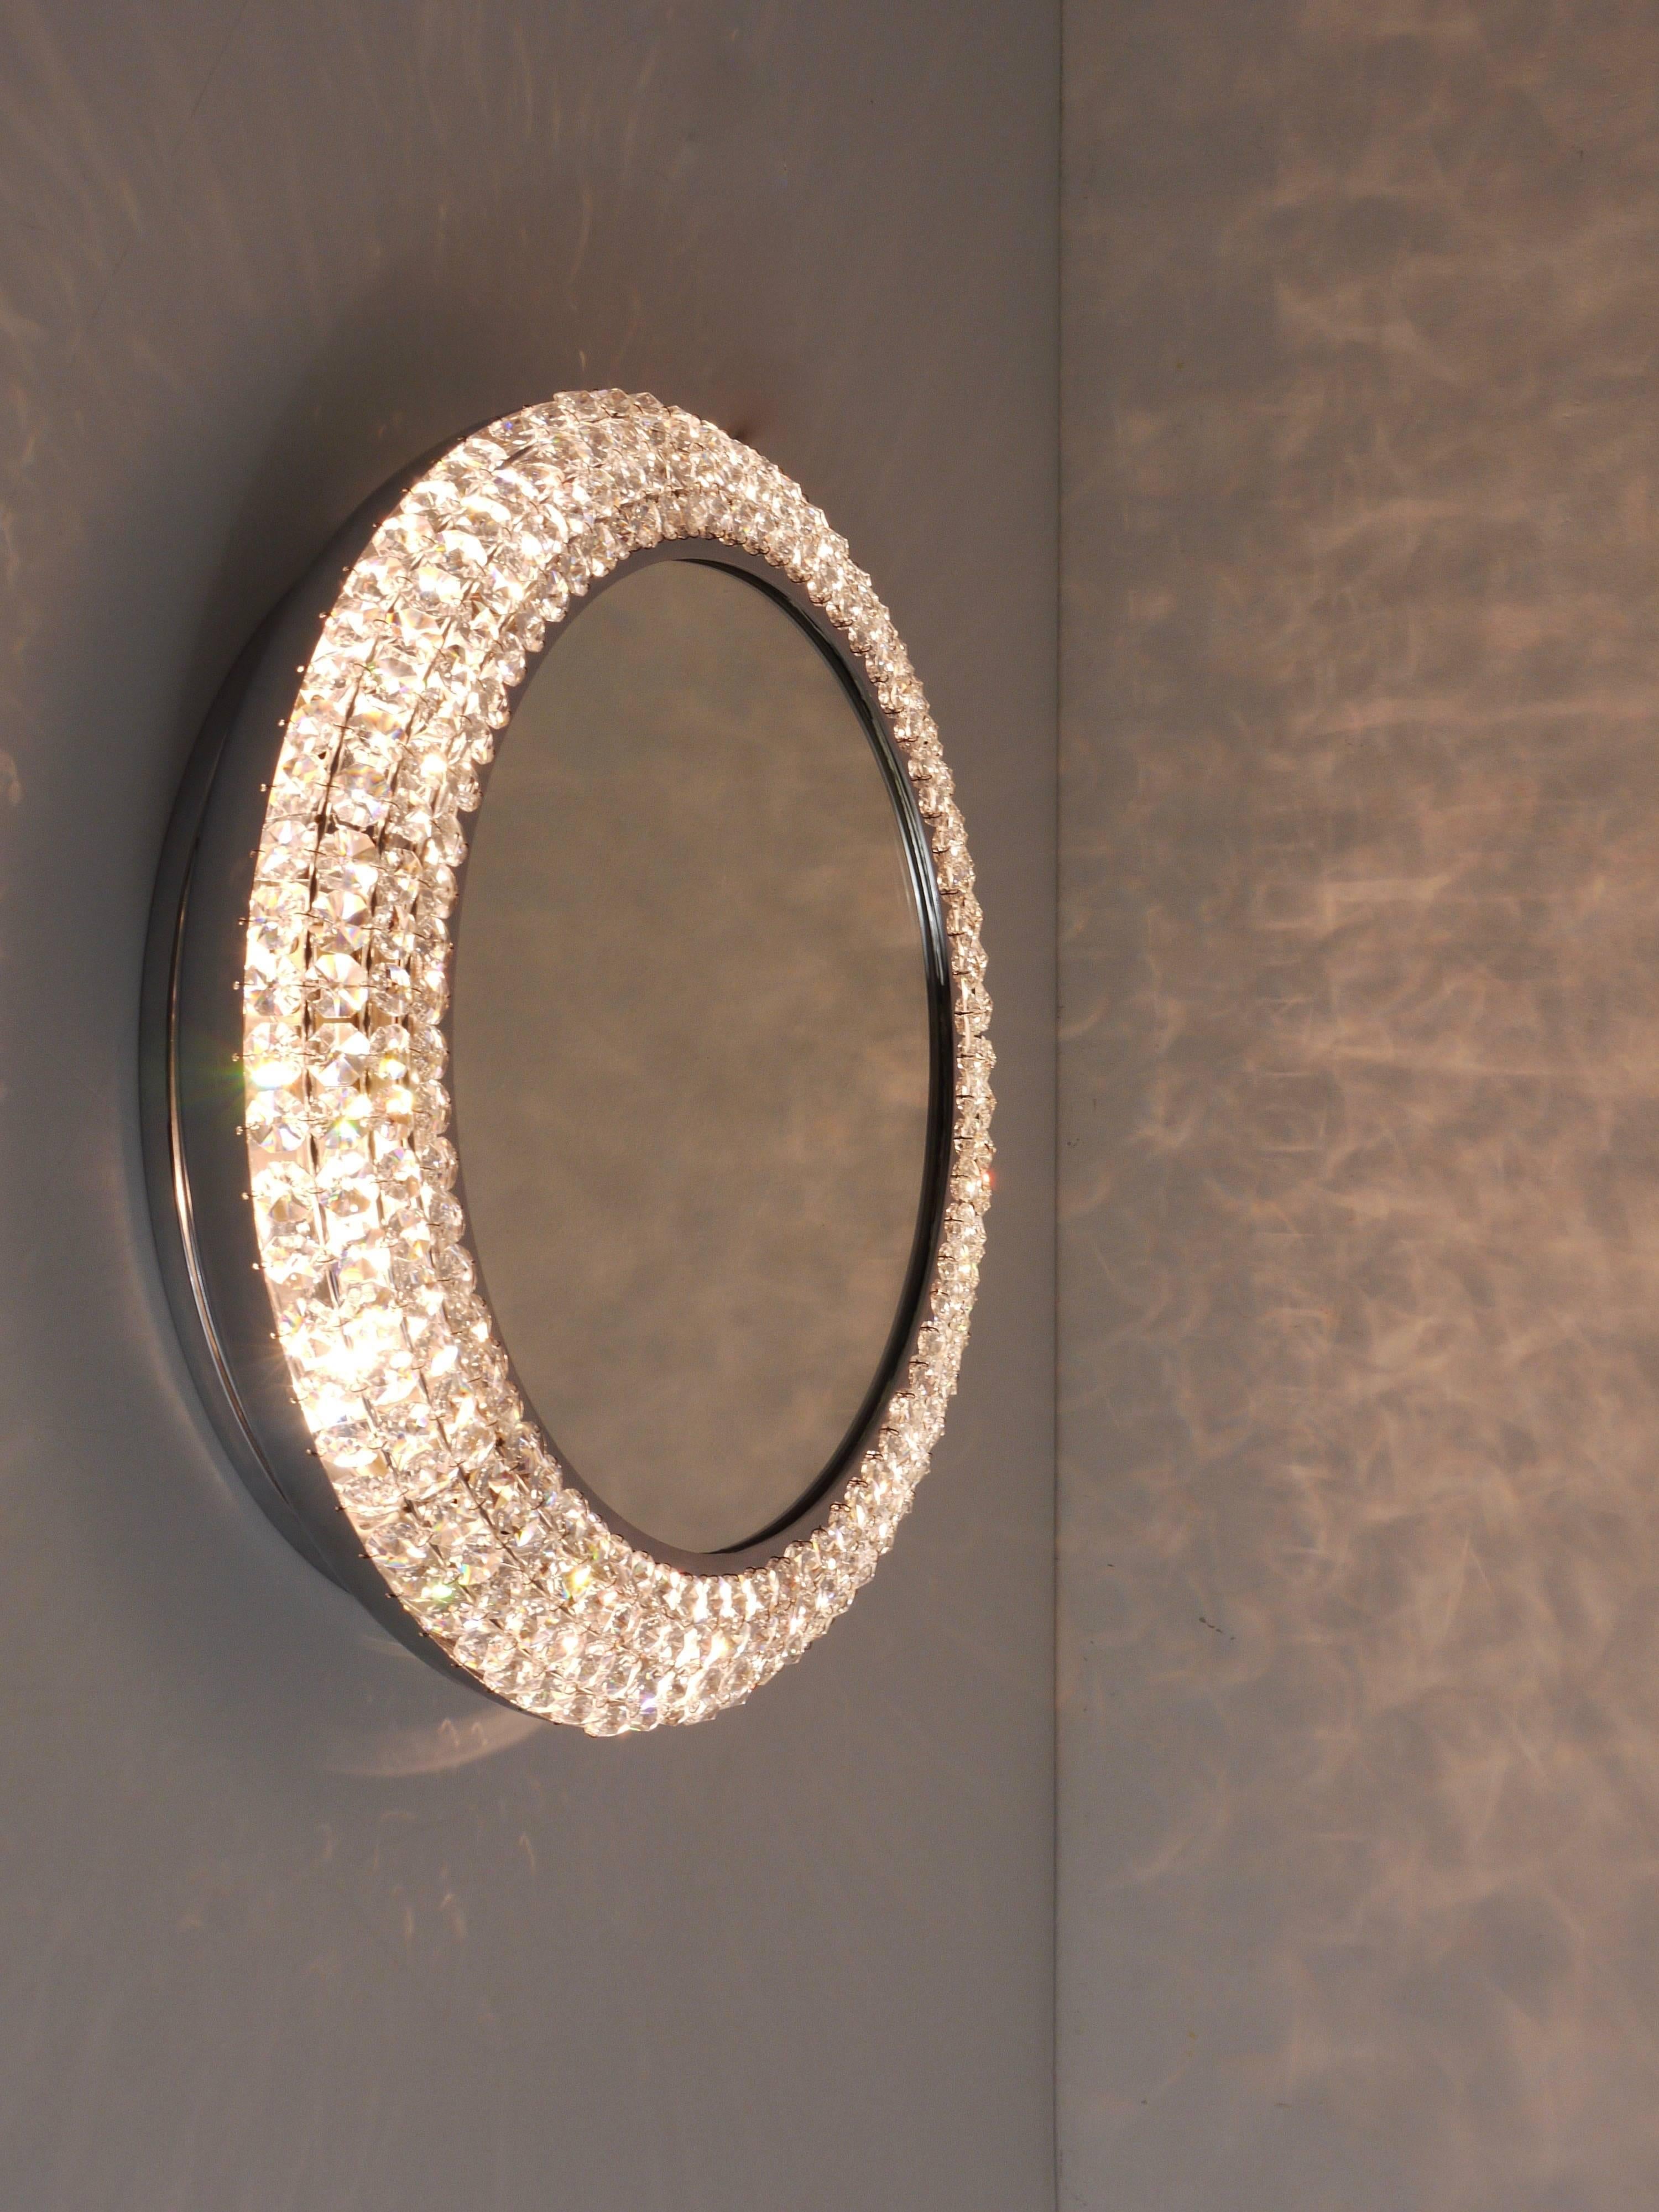 Exquisiter runder Mid-Century-Wandspiegel, beleuchtet und eingefasst in einen verchromten Rahmen, der mit hunderten  von facettierten Kristallen. Dieses handgefertigte Stück wurde in den 1960er Jahren in Österreich hergestellt und ist ein Beispiel